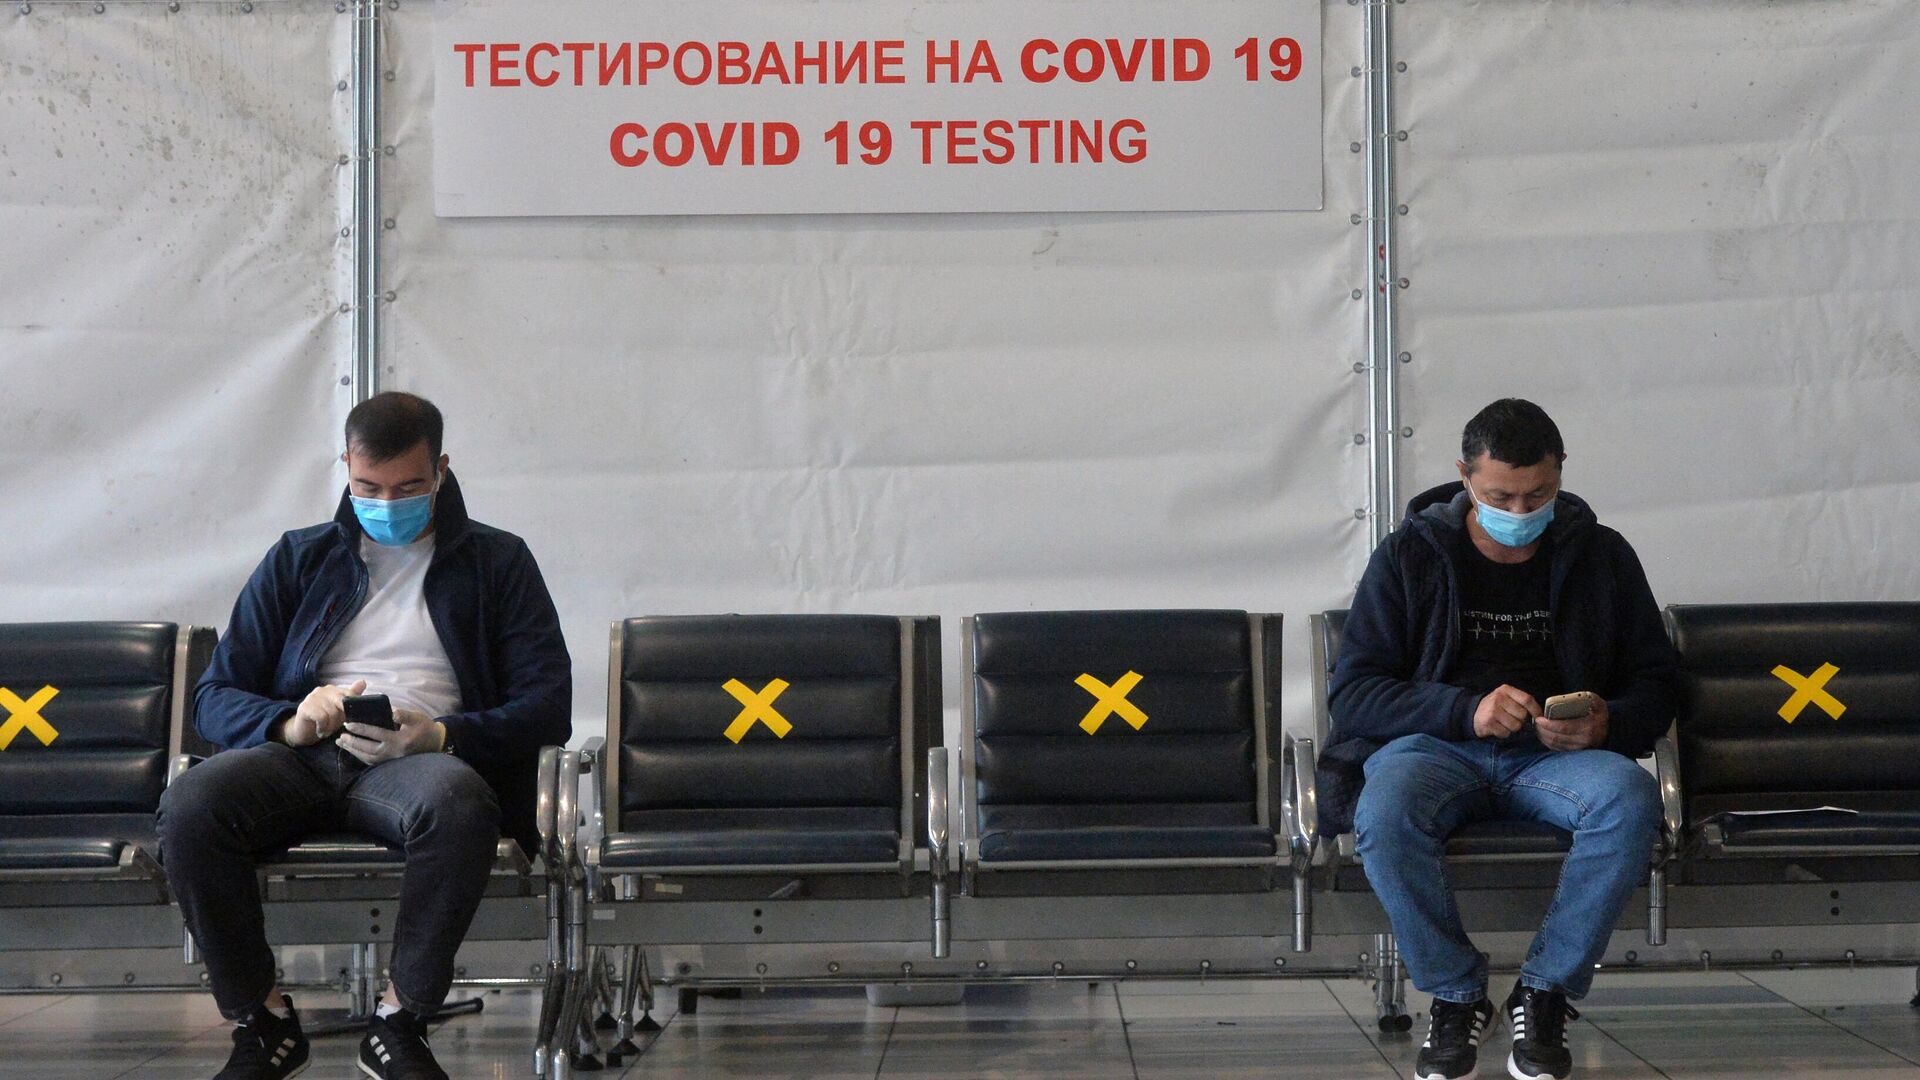 Пассажиры на экспресс-тестировании на COVID-19 в международном аэропорту Внуково - РИА Новости, 1920, 09.10.2020